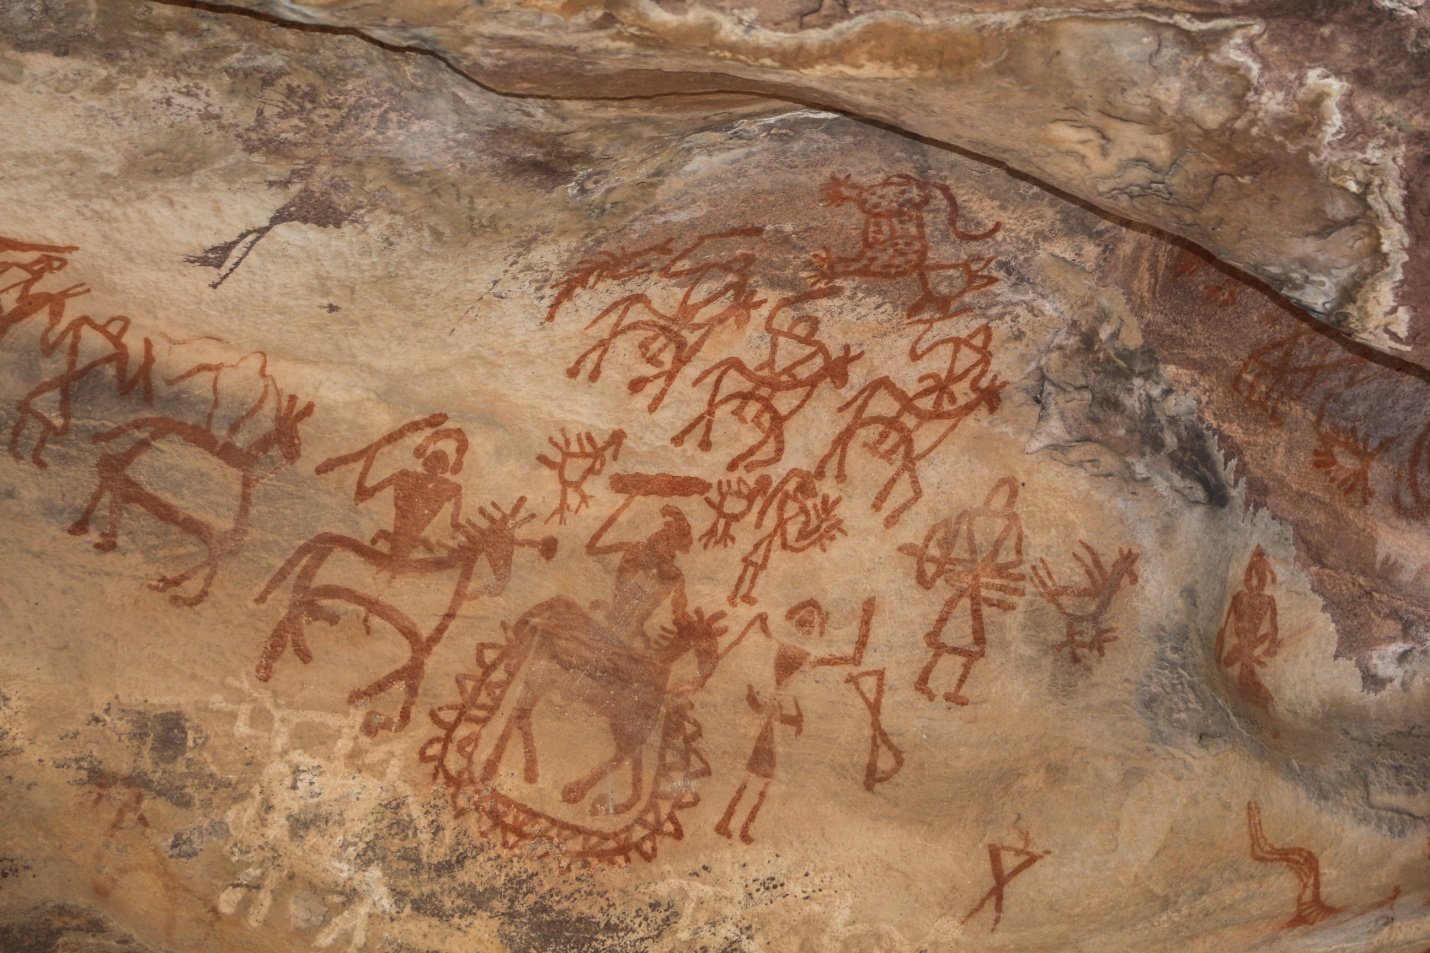 Photographie d'une peinture rupestre localisée à Bhimbetka en Inde. Scène représentant des hommes à cheval et à pied, revenant de guerre ou d'une chasse collective.